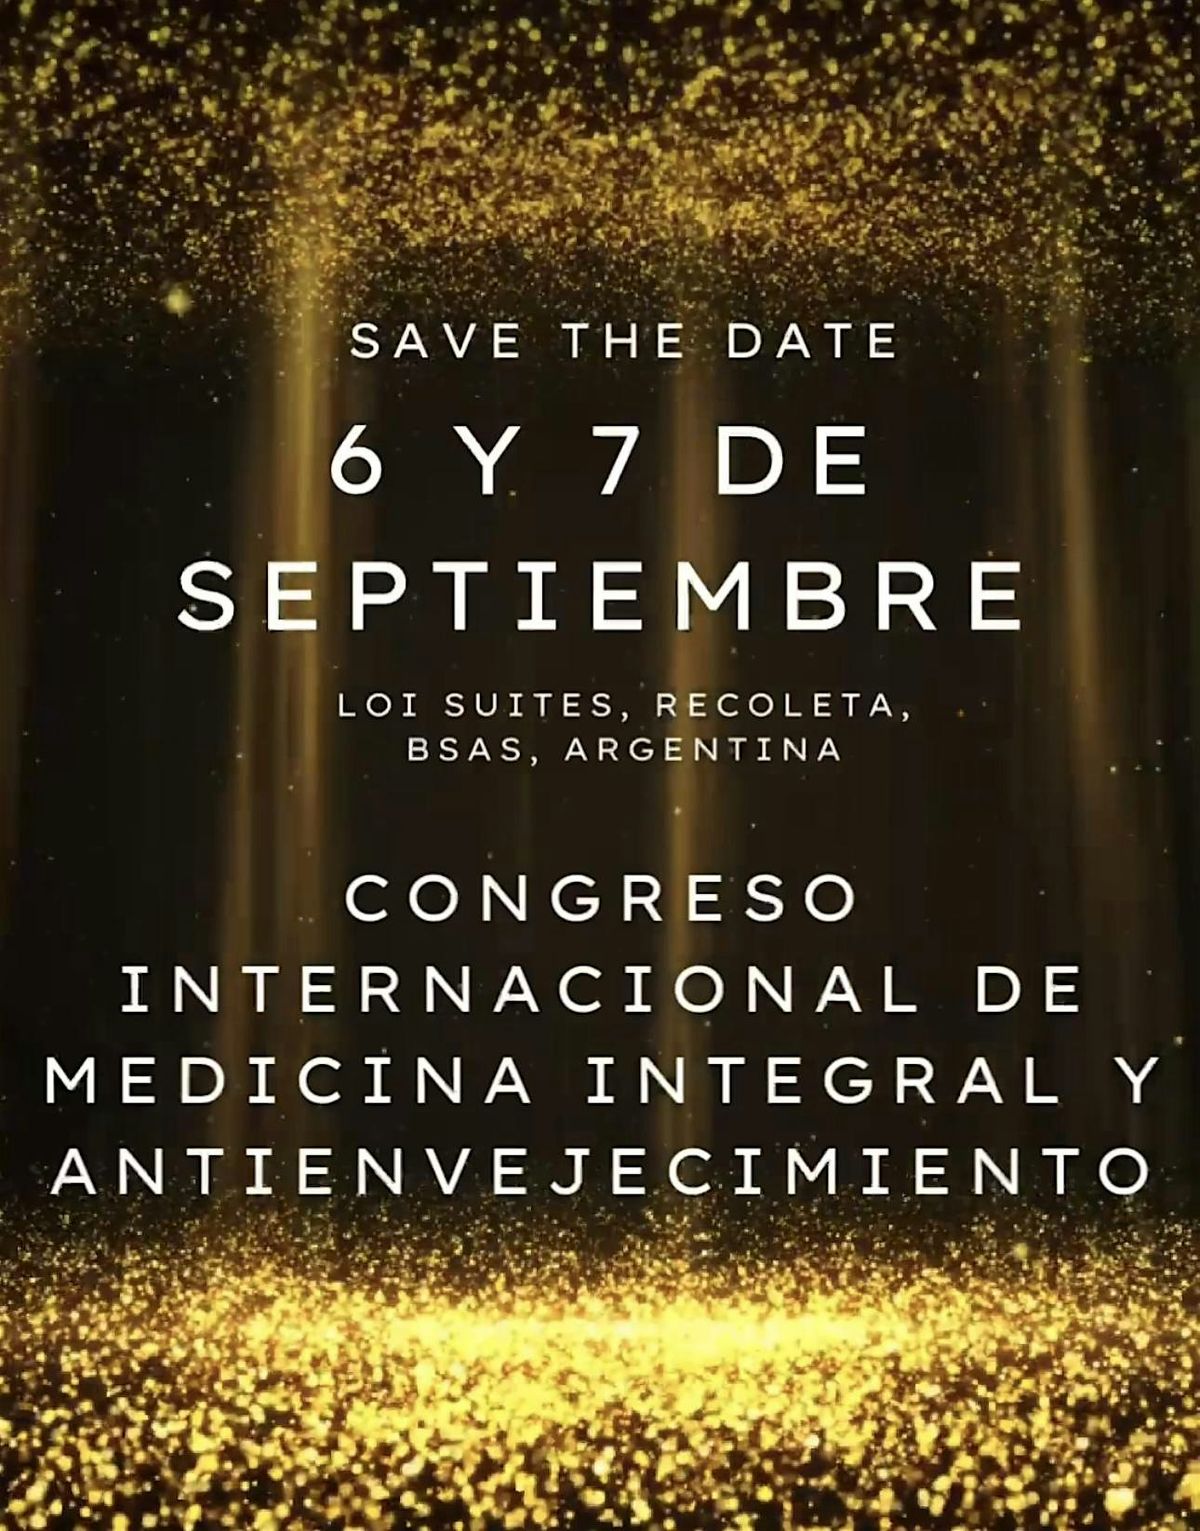 Congreso Internacional de Medicina Integral y Antienvejecimiento